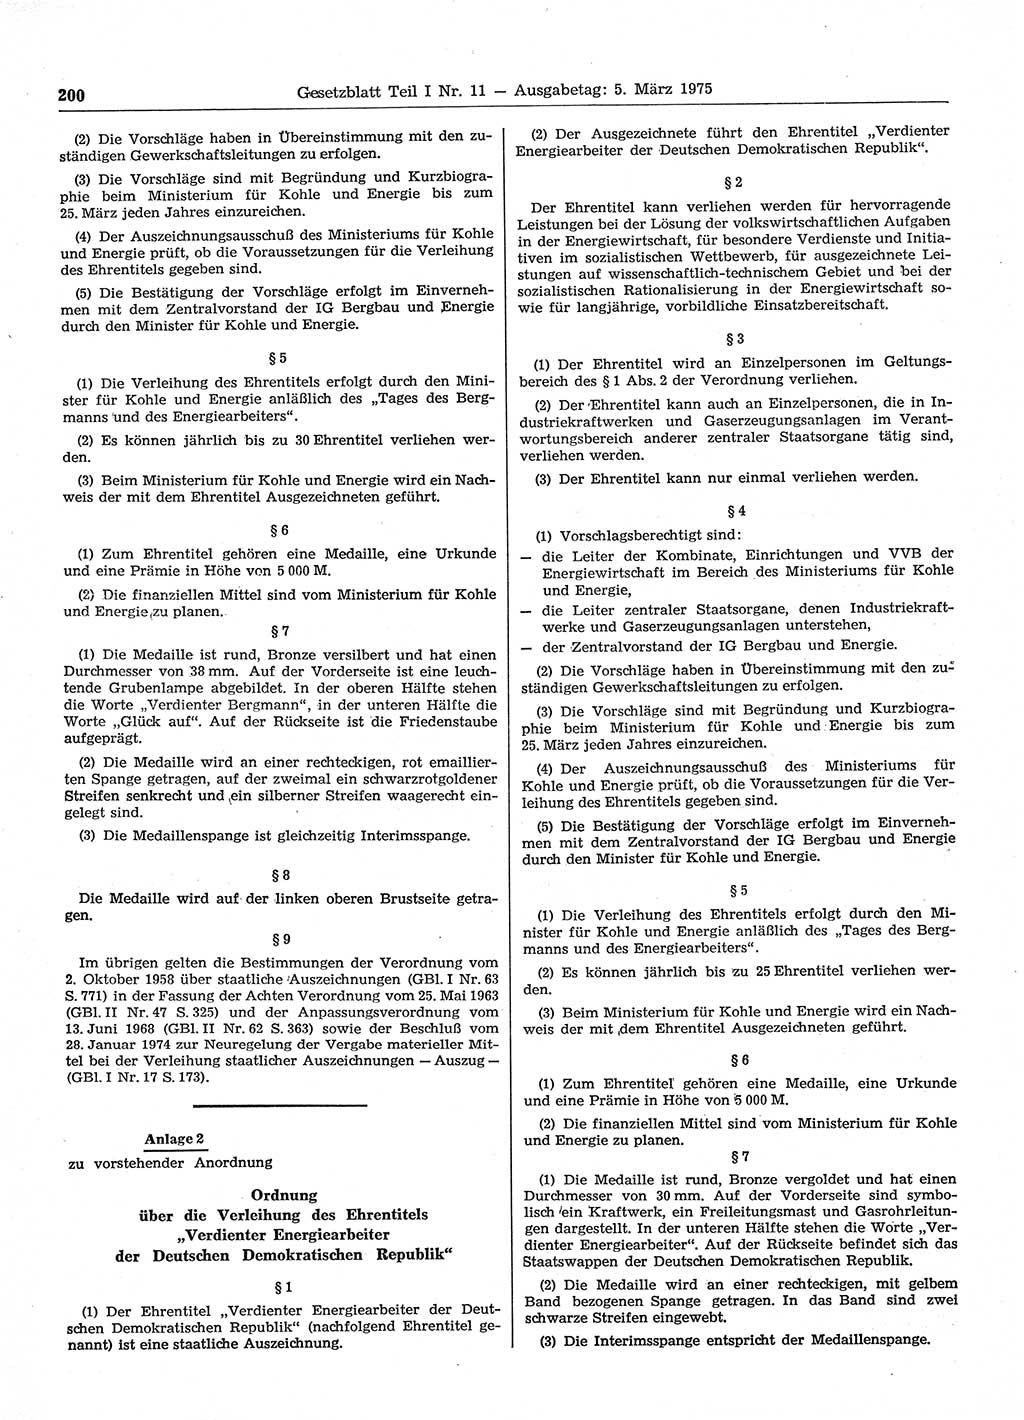 Gesetzblatt (GBl.) der Deutschen Demokratischen Republik (DDR) Teil Ⅰ 1975, Seite 200 (GBl. DDR Ⅰ 1975, S. 200)